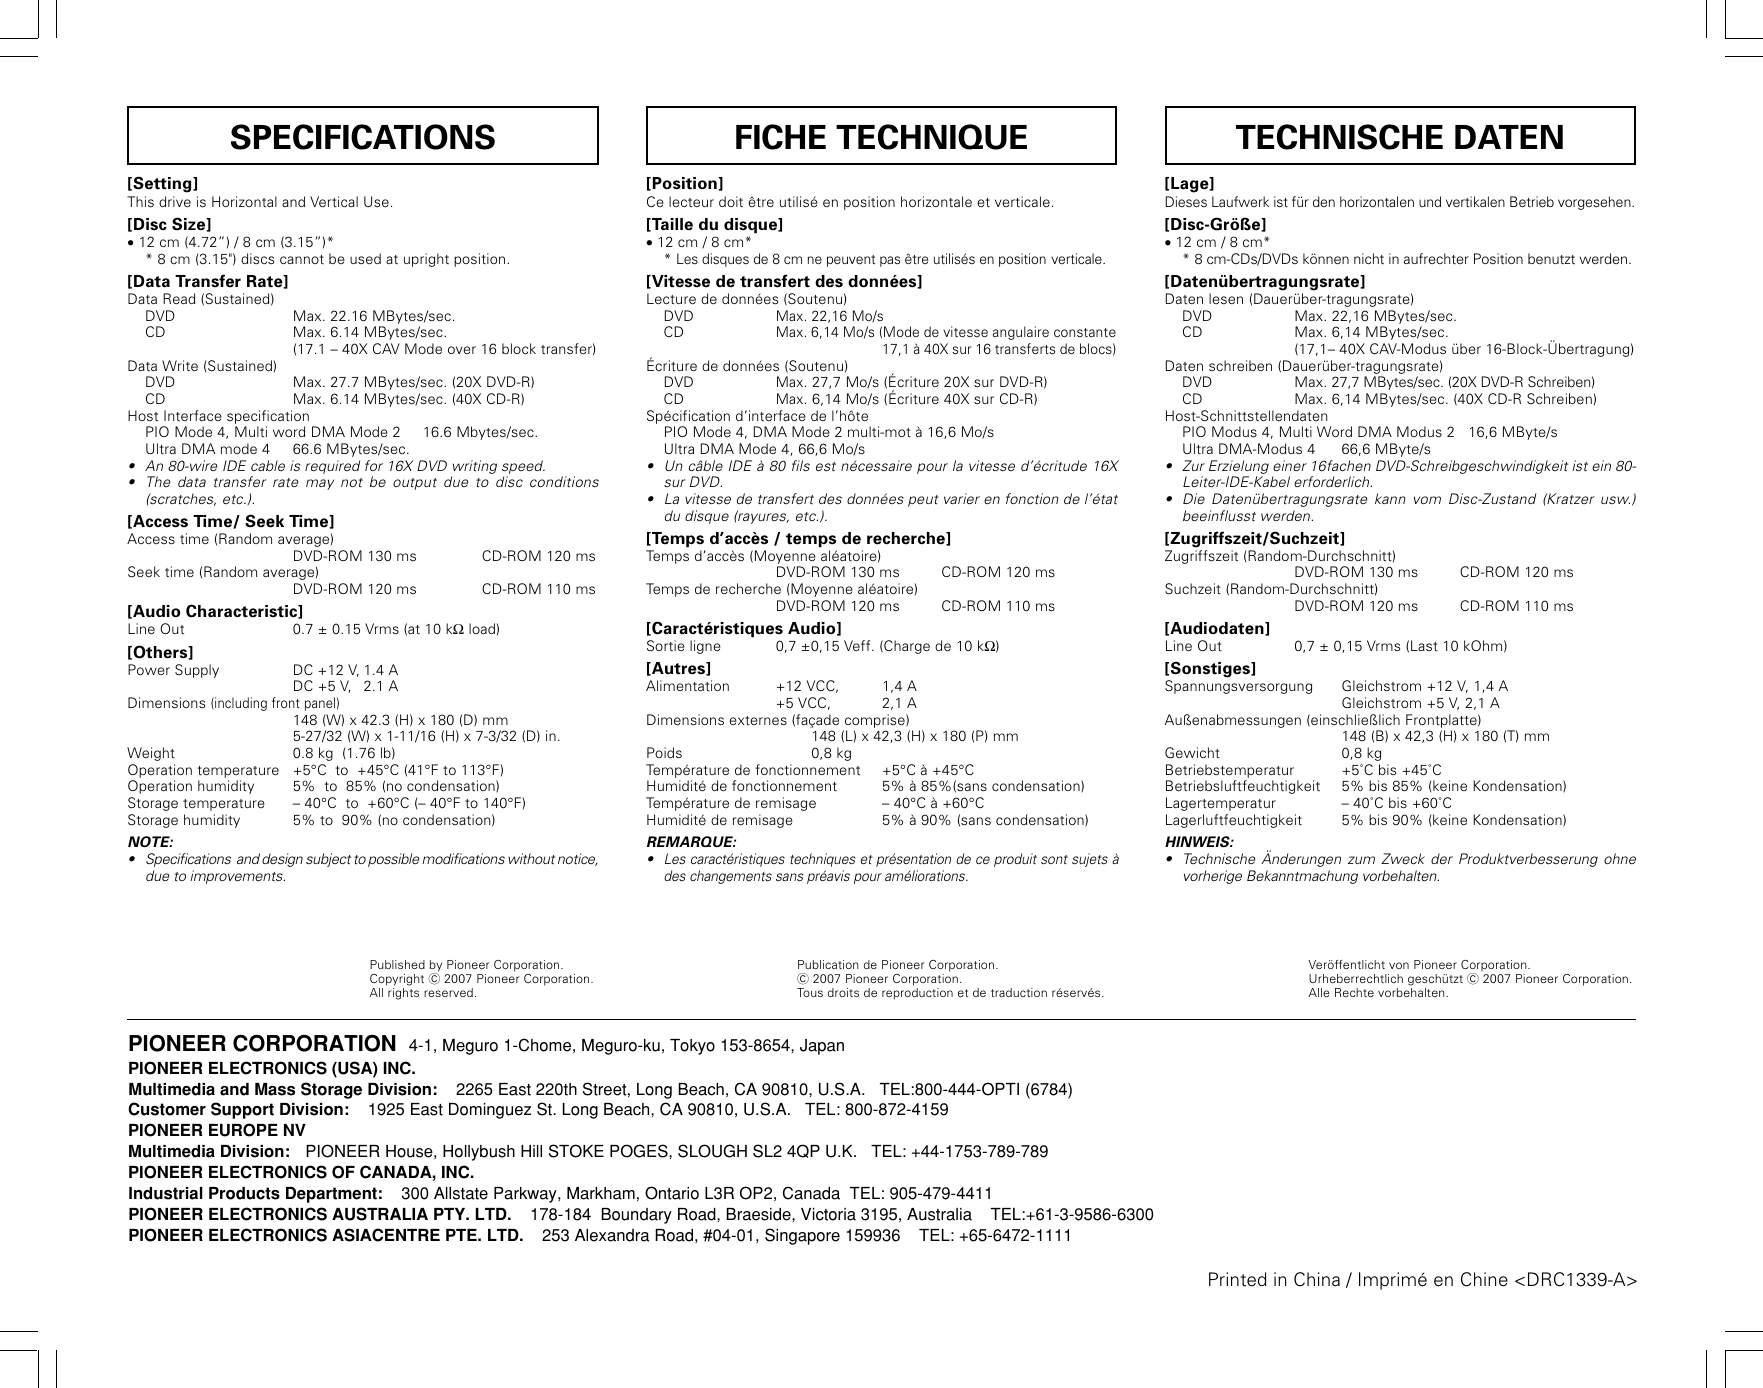 Page 8 of 8 - Pioneer Pioneer-Dvr-115Dbk-Users-Manual- DRC1339-A  Pioneer-dvr-115dbk-users-manual